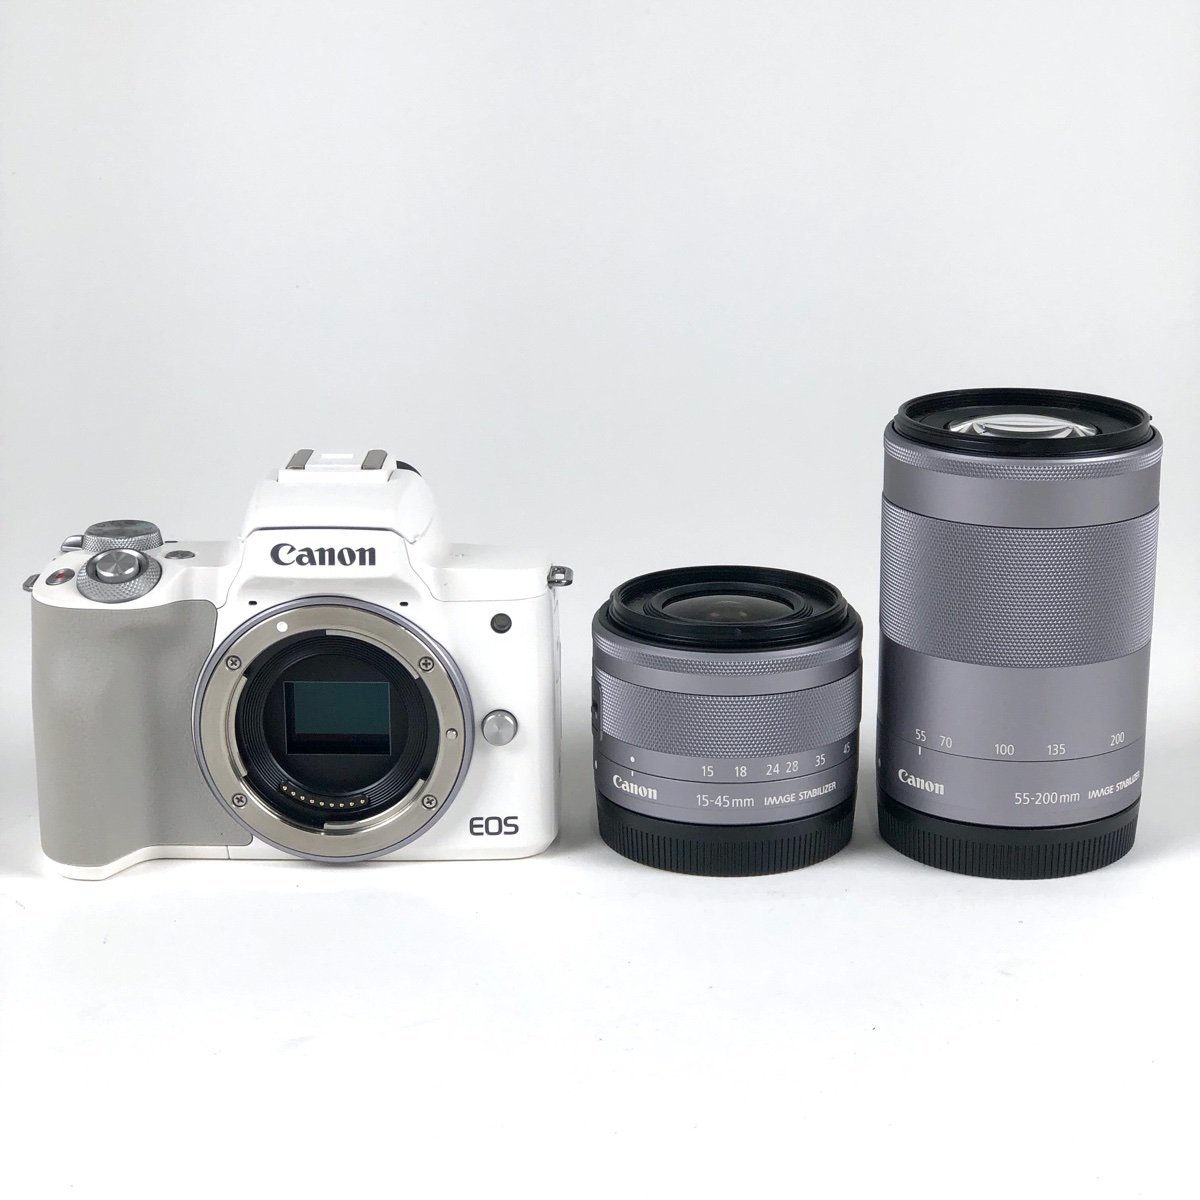 キヤノン Canon EOS Kiss M ダブルズームキット デジタル ミラーレス